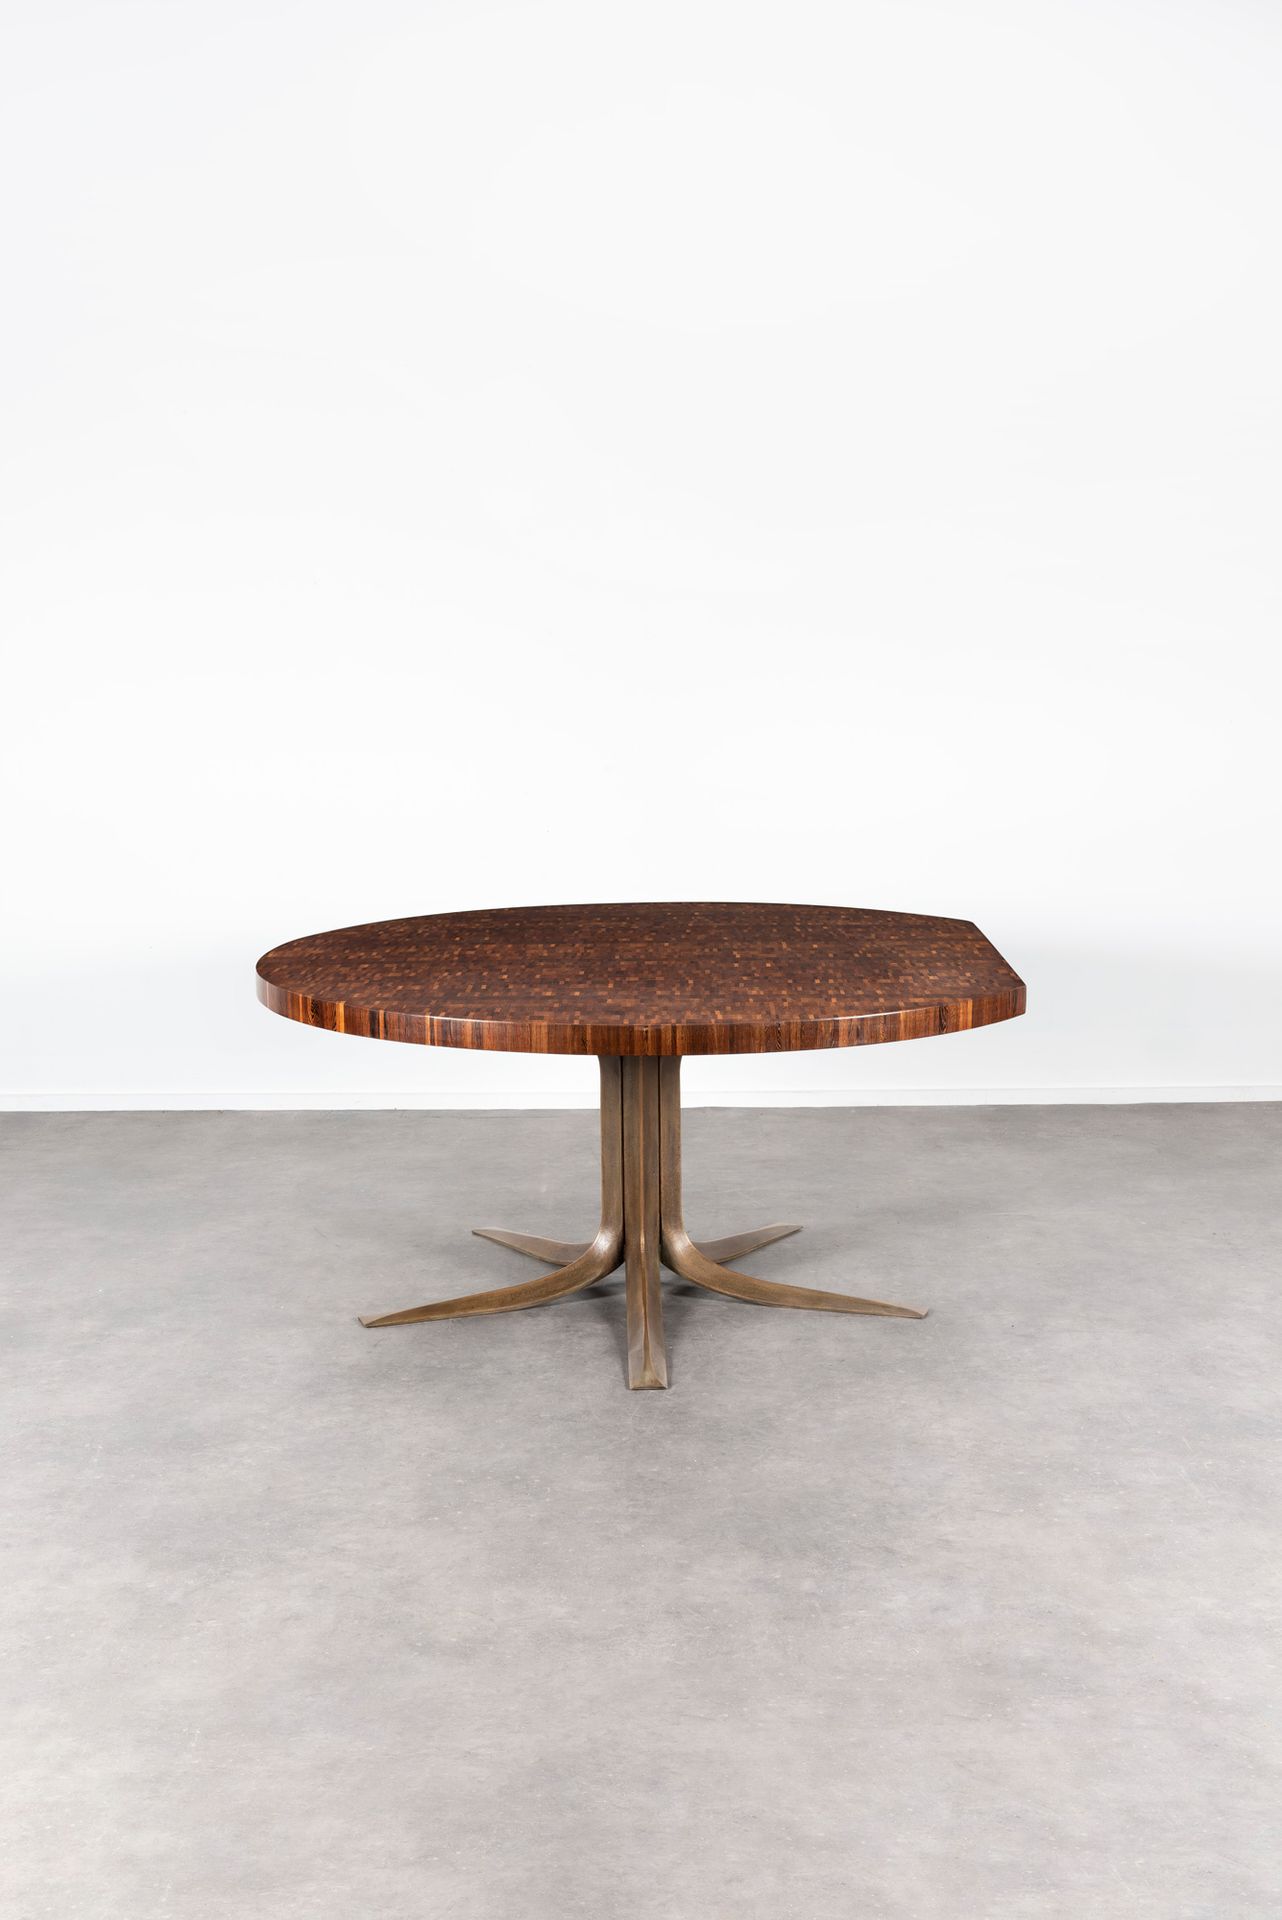 JULES WABBES (1919-1974) AR 
镂空桌
镂空的木桌，置于中央的郁金香形底座上，底座上有五个铸铜枝。

剖面图
桌子上有一个中央的郁金香&hellip;